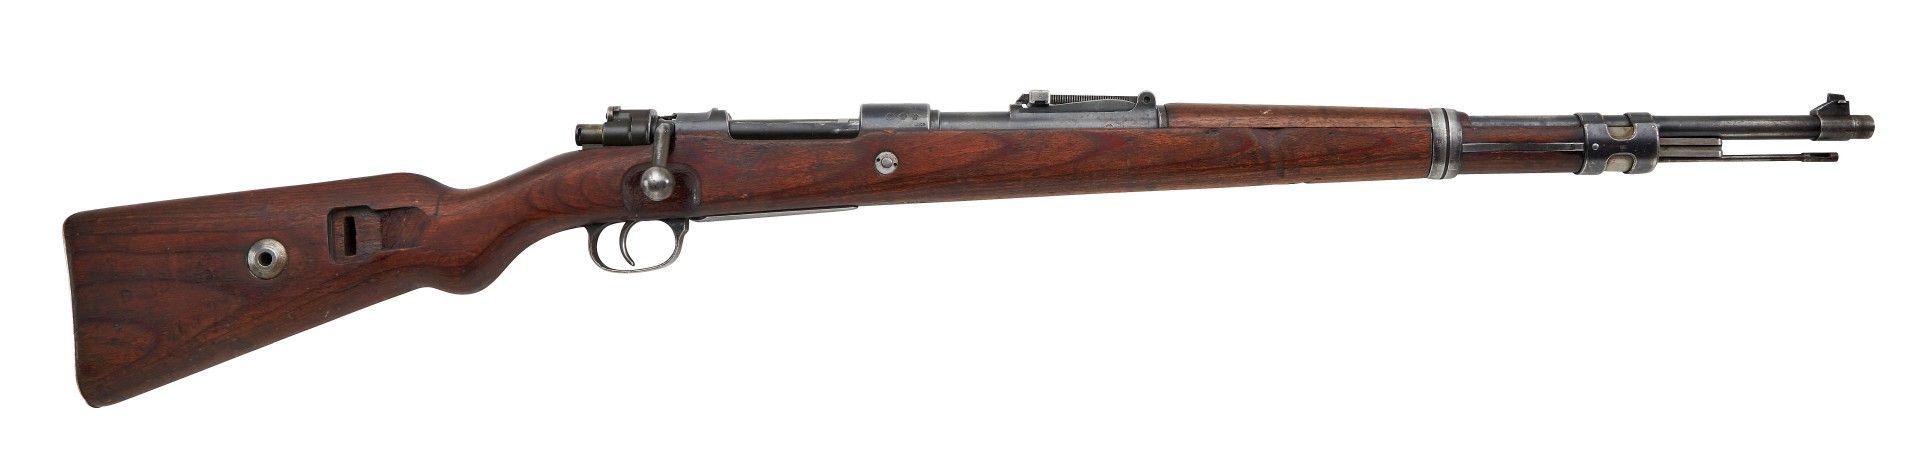 Repetierbüchse Mod.: Karabiner K 98k Hersteller: S/42 1936 (Fa. Mauser Oberndorf a.N.) Kal.: 8 ...